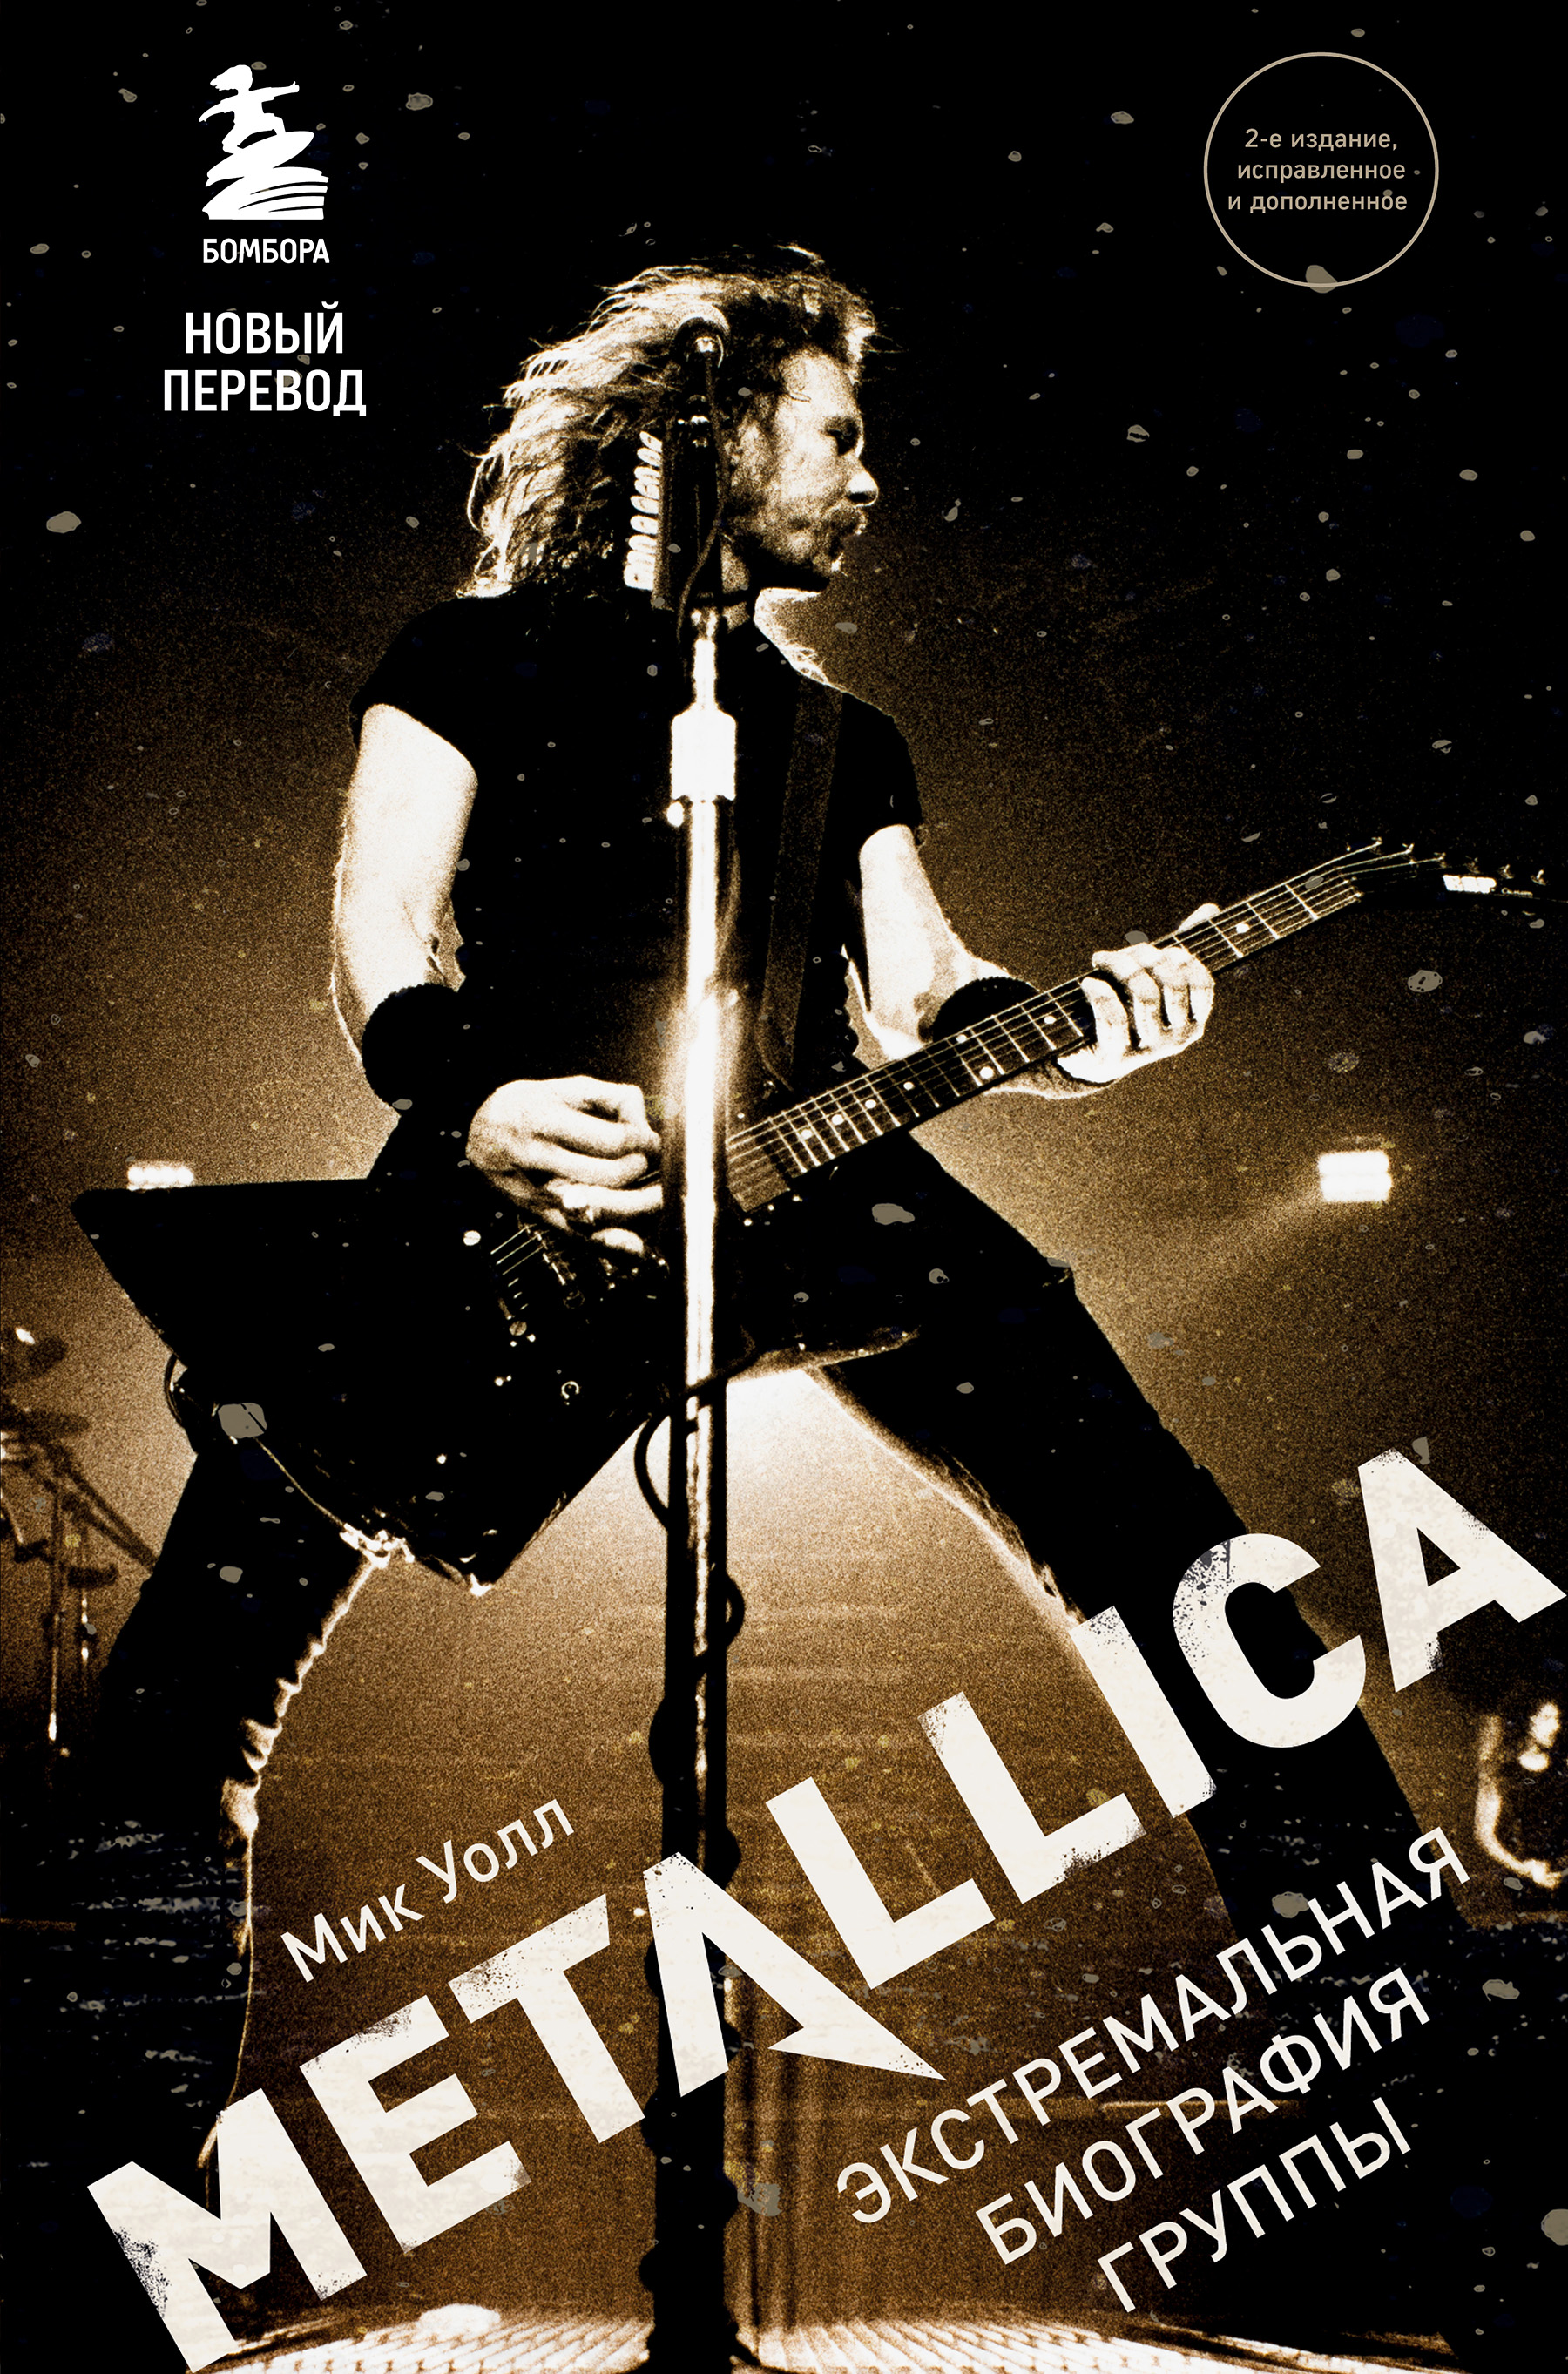 Книга Metallica. Экстремальная биография группы из серии , созданная Мик Уолл, может относится к жанру Биографии и Мемуары, Зарубежная прикладная и научно-популярная литература, Музыка, балет, Зарубежная публицистика. Стоимость электронной книги Metallica. Экстремальная биография группы с идентификатором 43174587 составляет 299.00 руб.